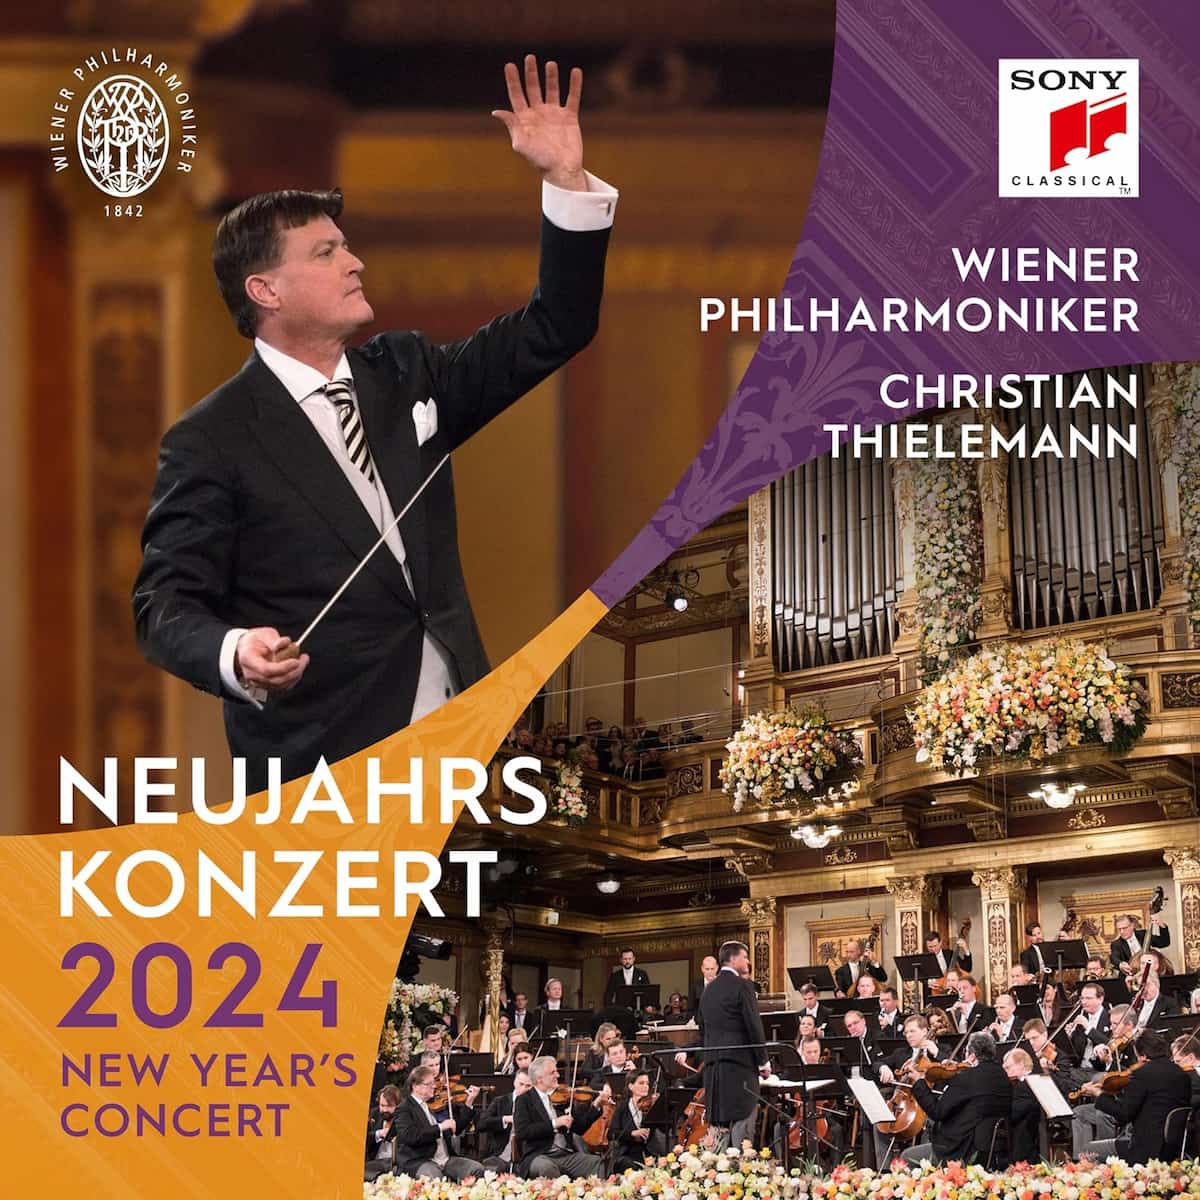 Neujahrskonzert 2024 der Wiener Philharmoniker als CD, DVD, Blu-ray, Download und Vinyl-Schallplatte